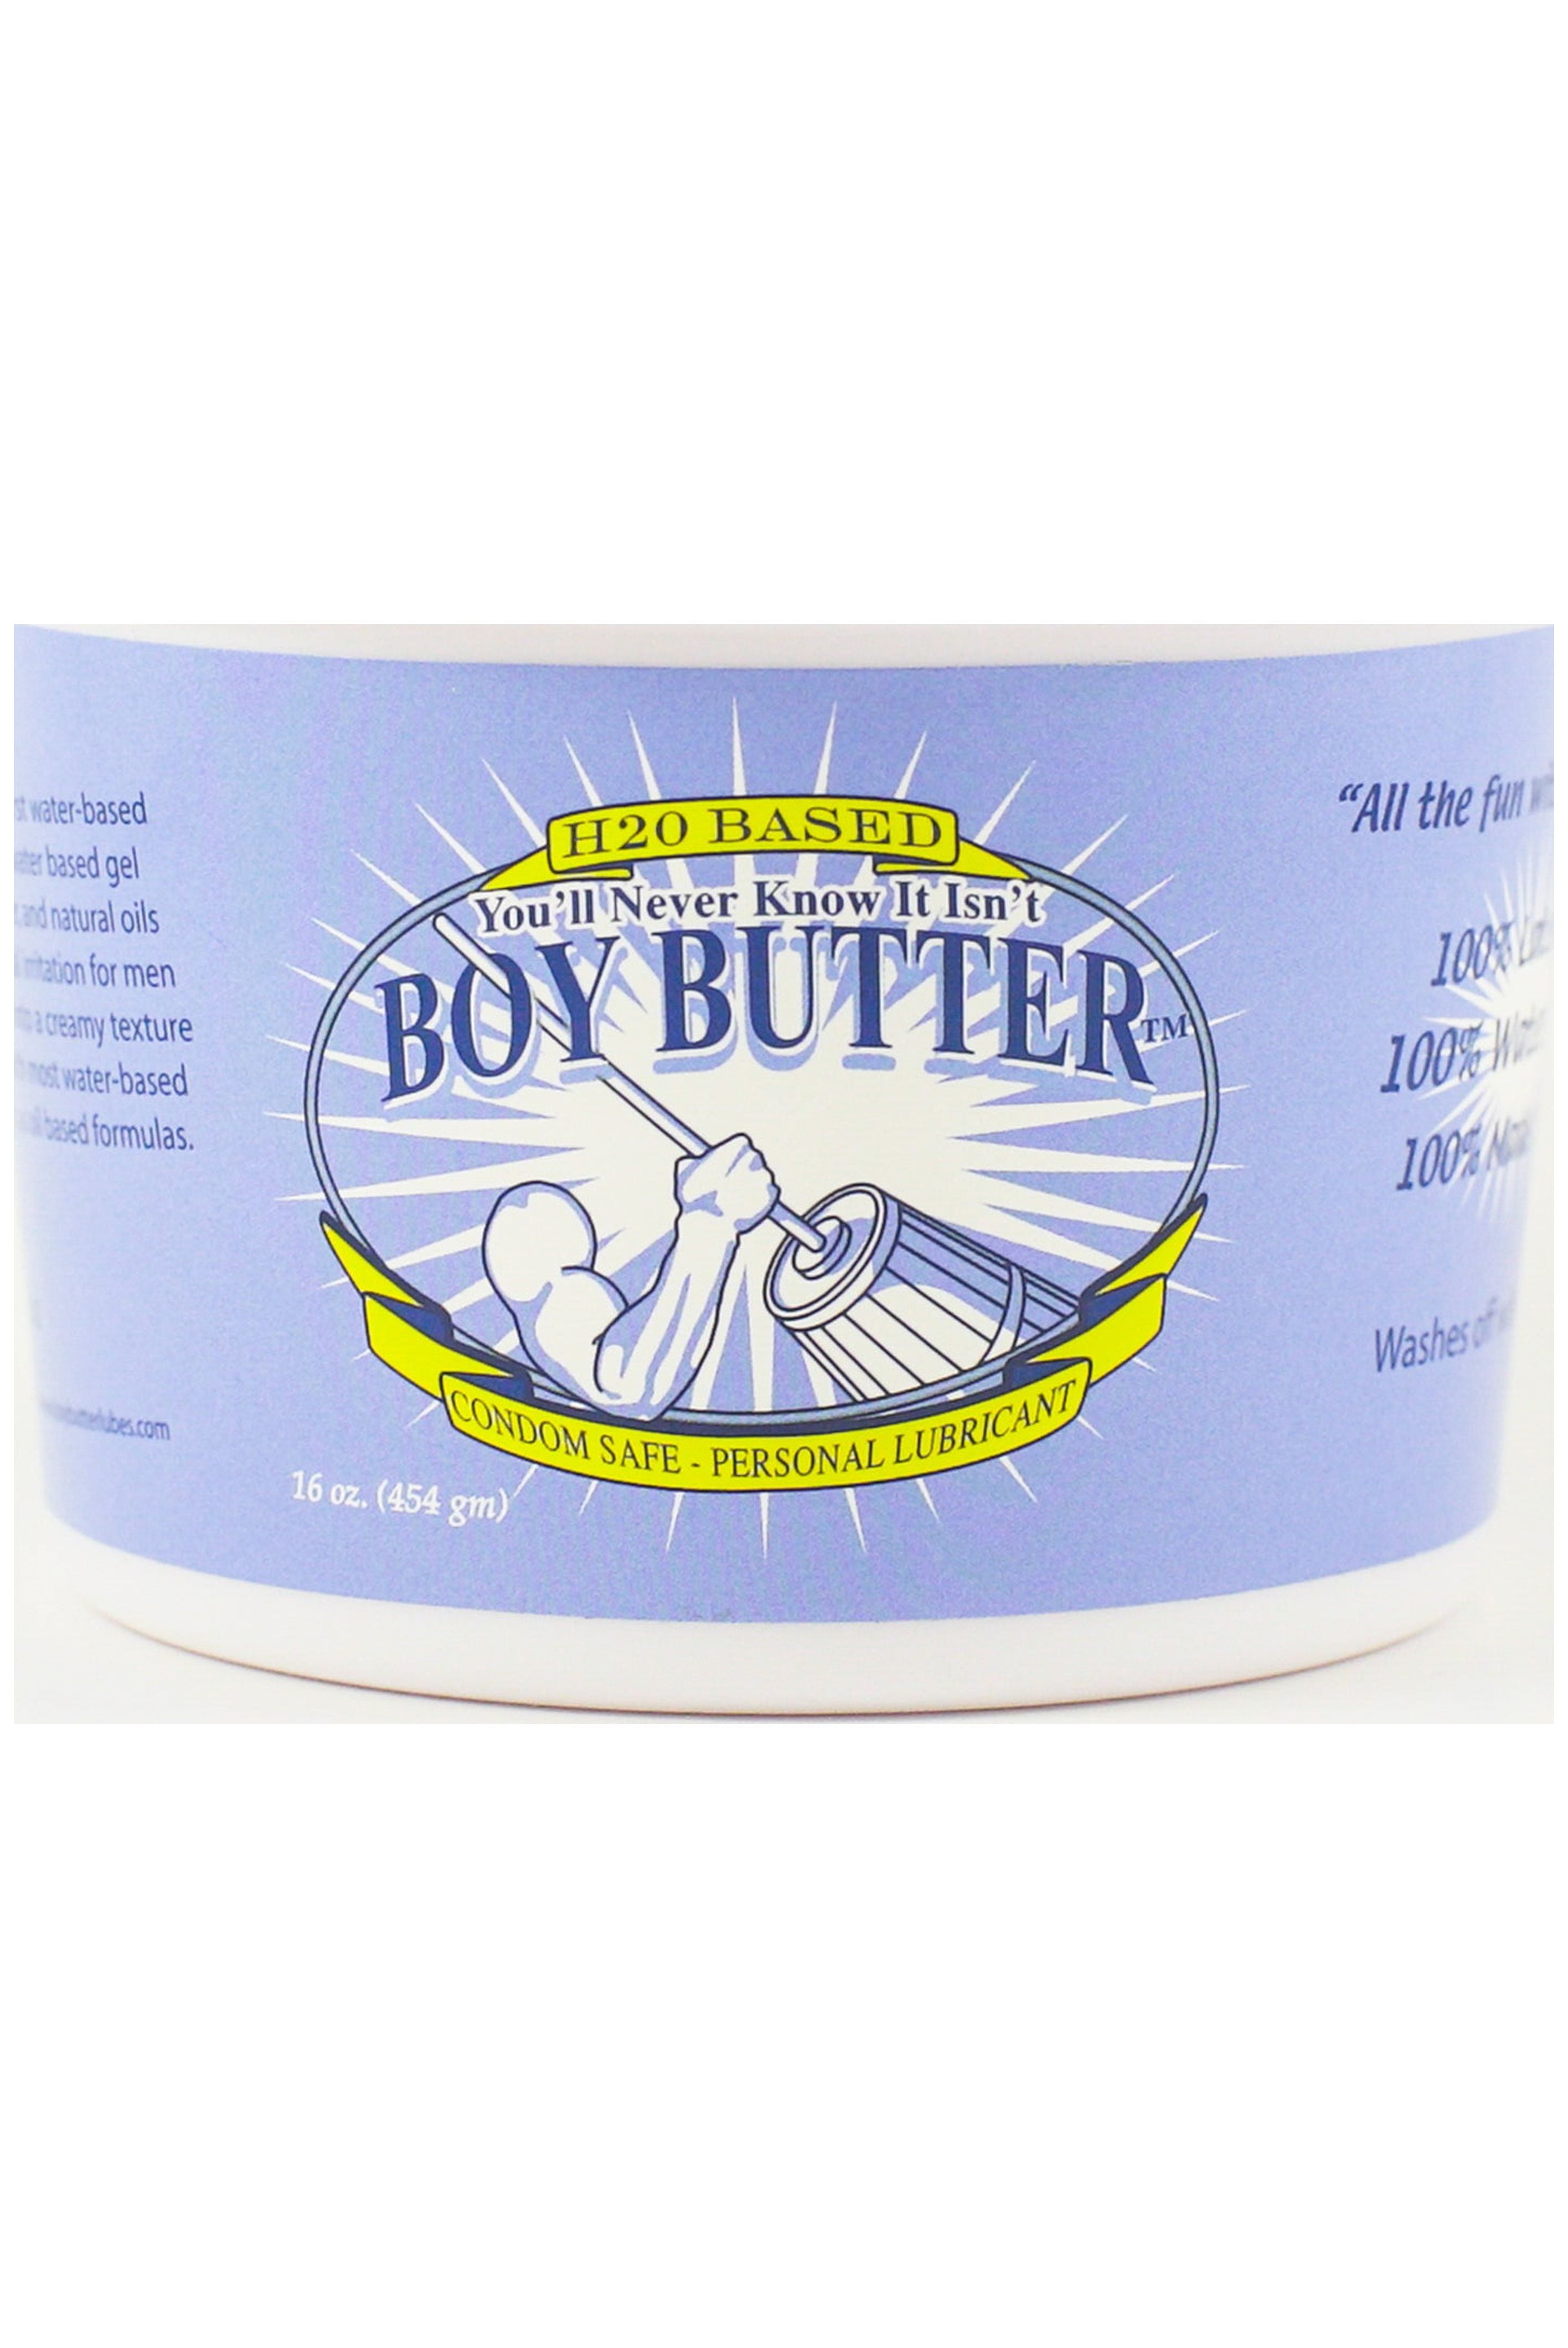 Boy Butter H2O Tub 04 oz - HUMANITY!